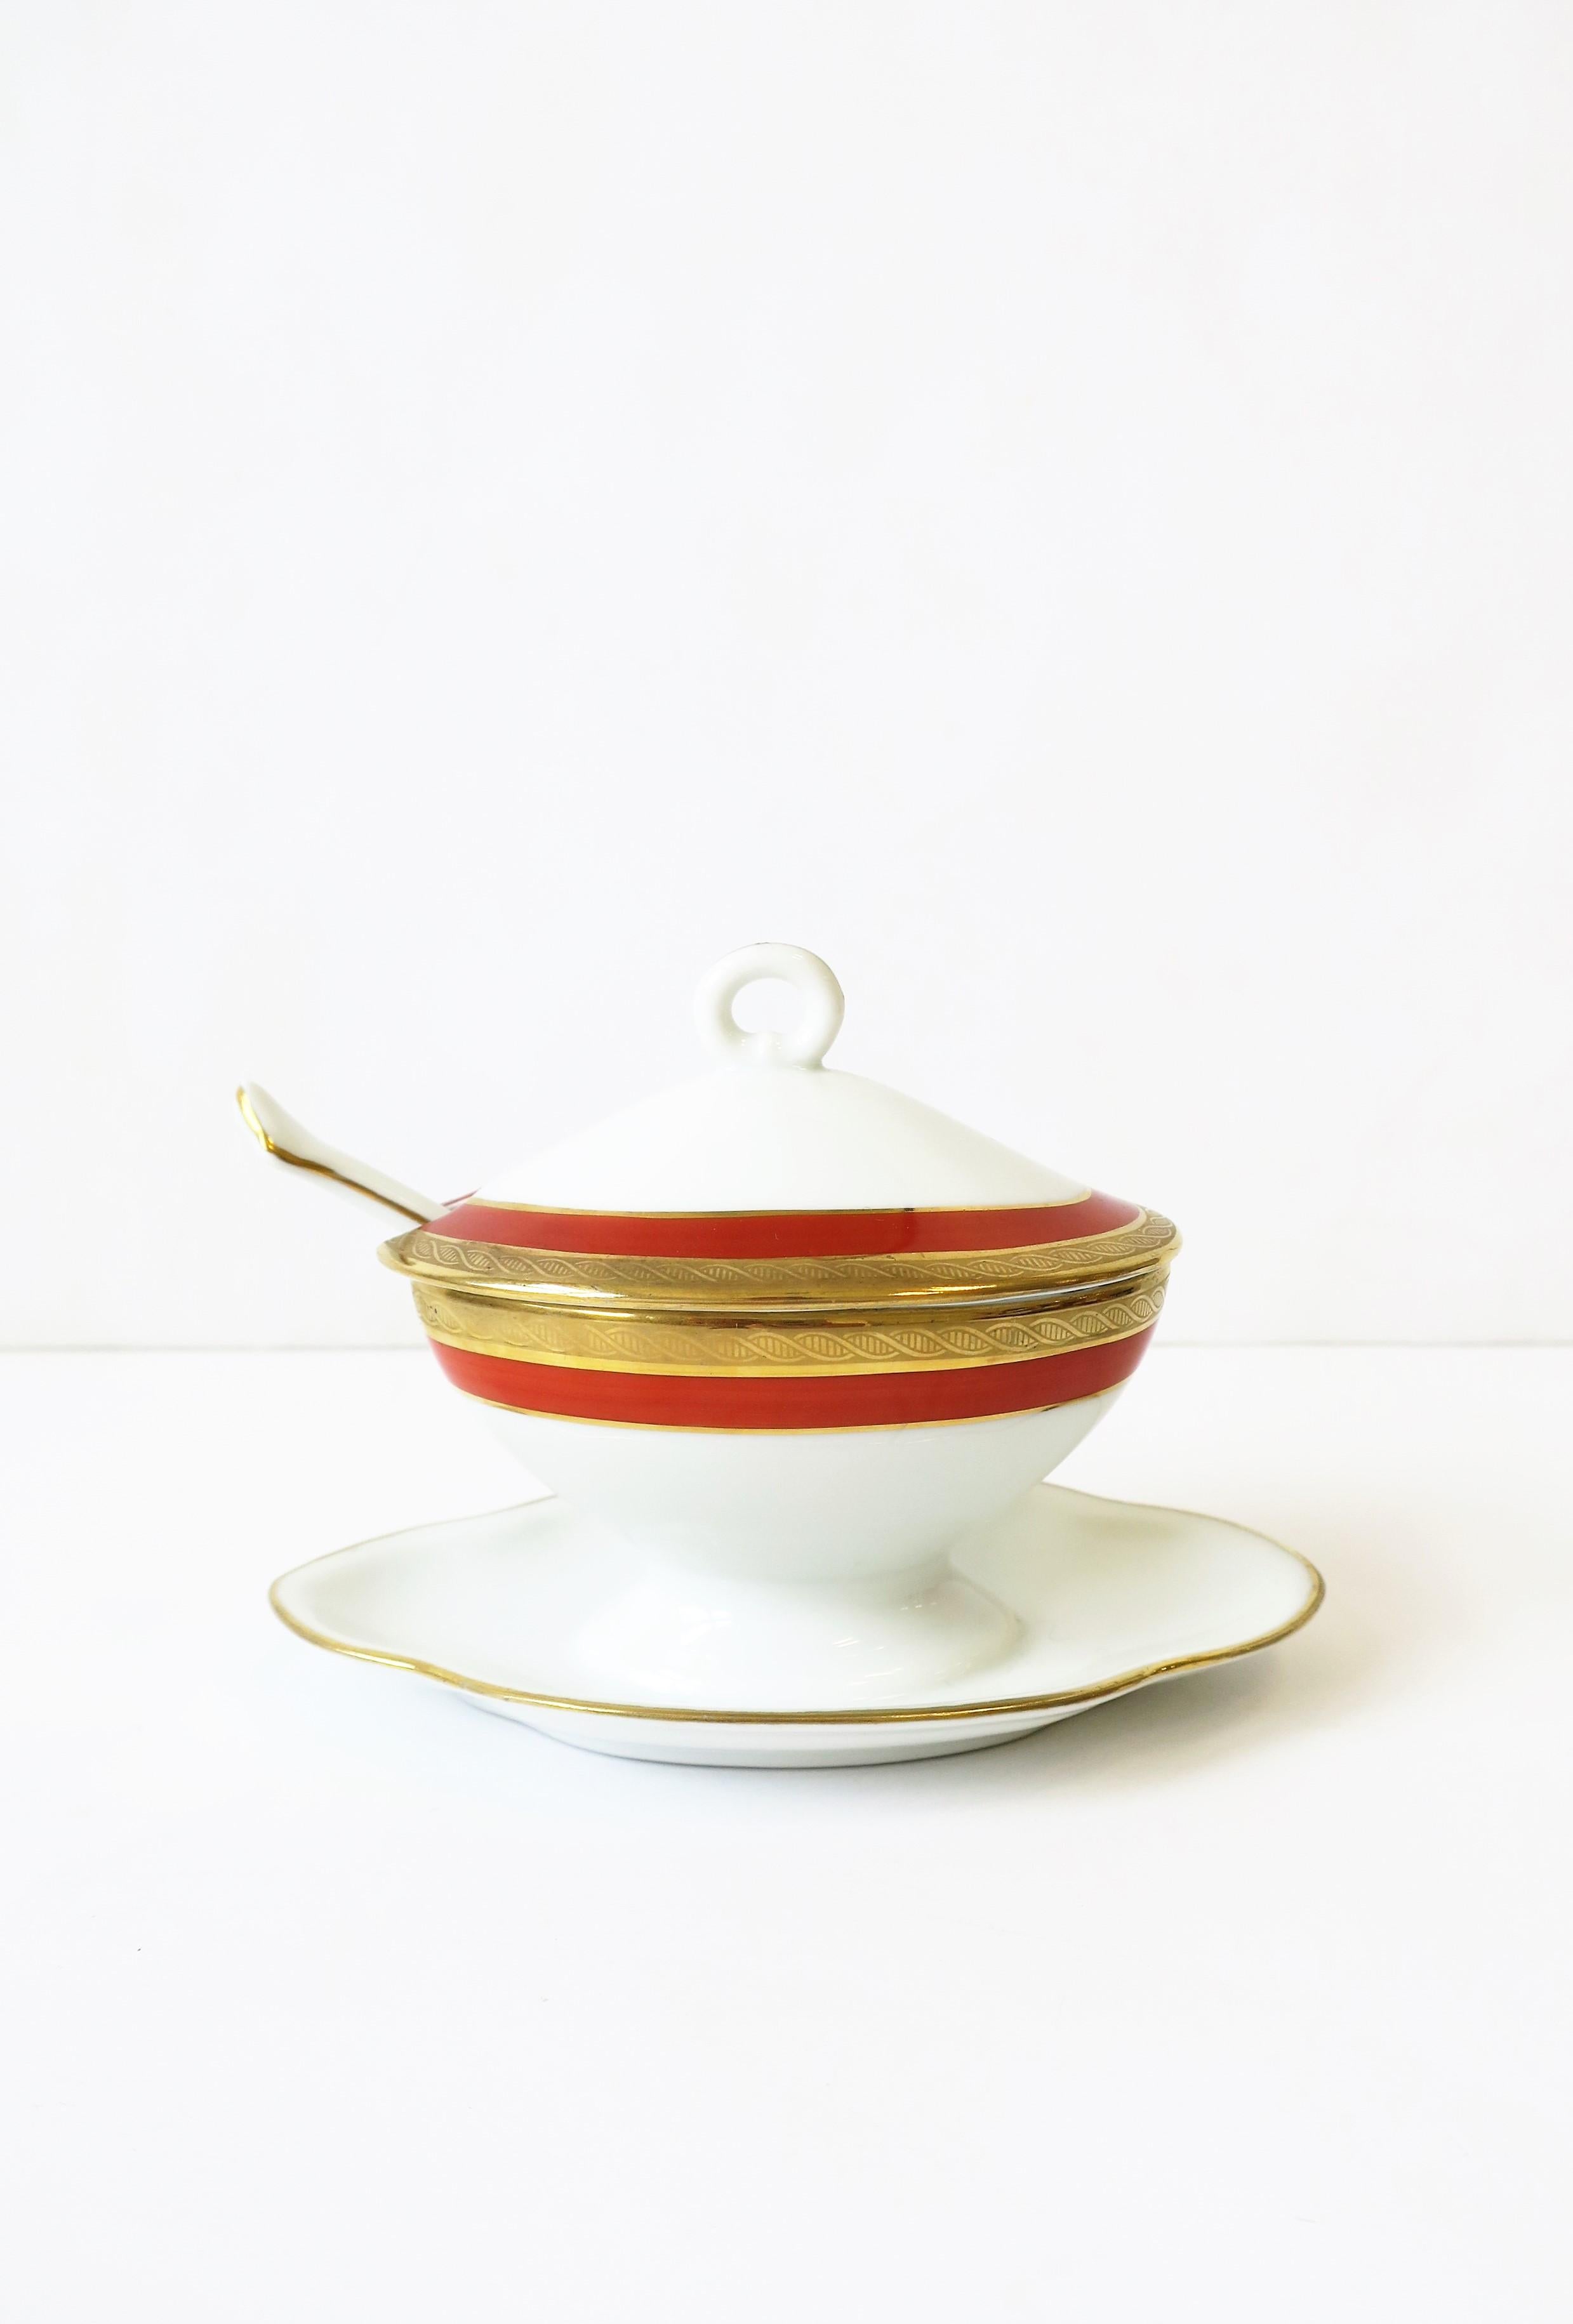 Magnifique plat à condiments ou récipient en porcelaine italienne blanche et dorée avec couvercle et cuillère par le designer Richard Ginori, vers le milieu du 20e siècle, Italie. Le couvercle est doté d'une poignée en forme de boucle pour le